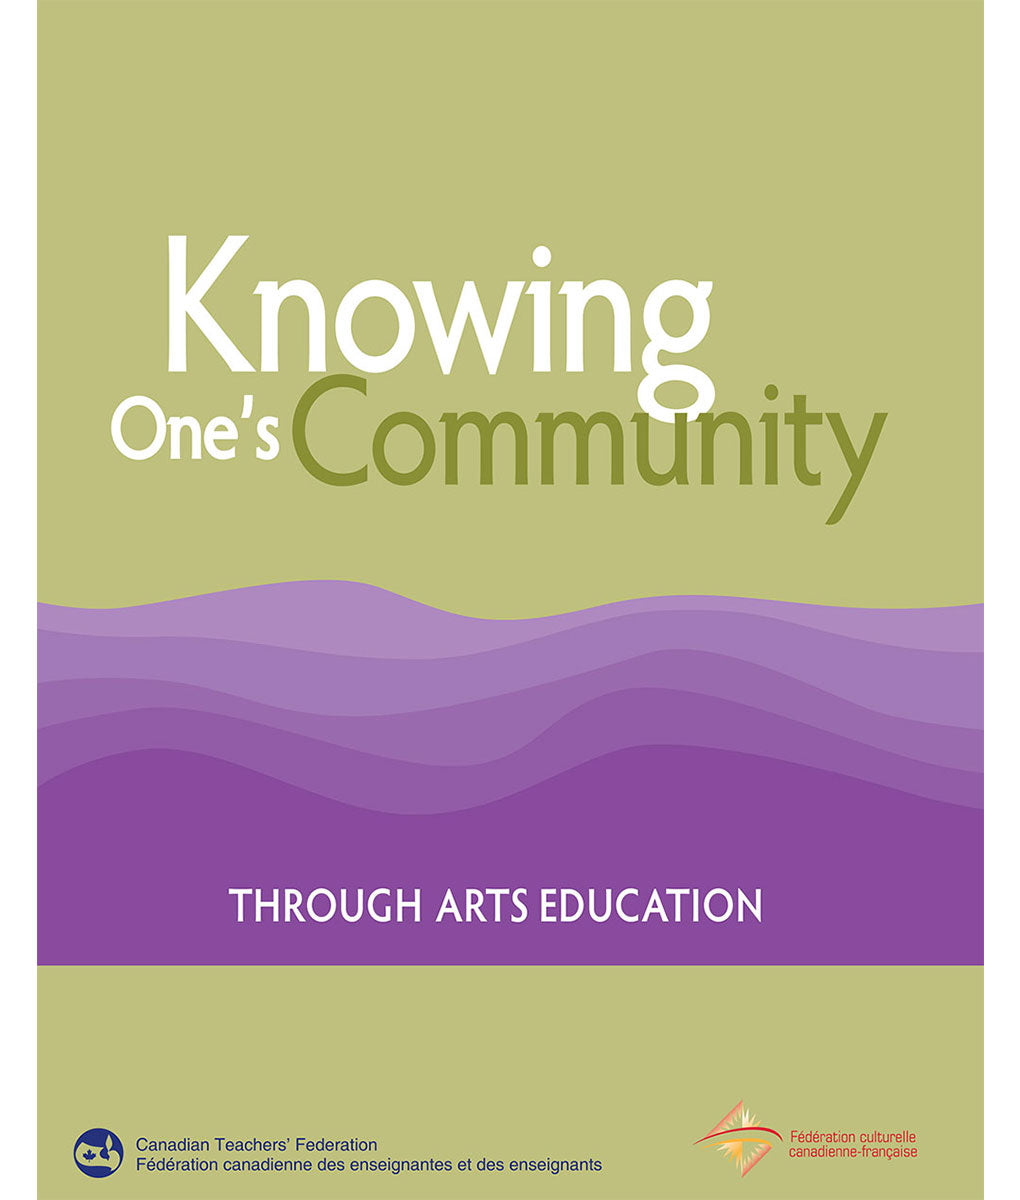 Apprendre sa communauté par l’éducation artistique